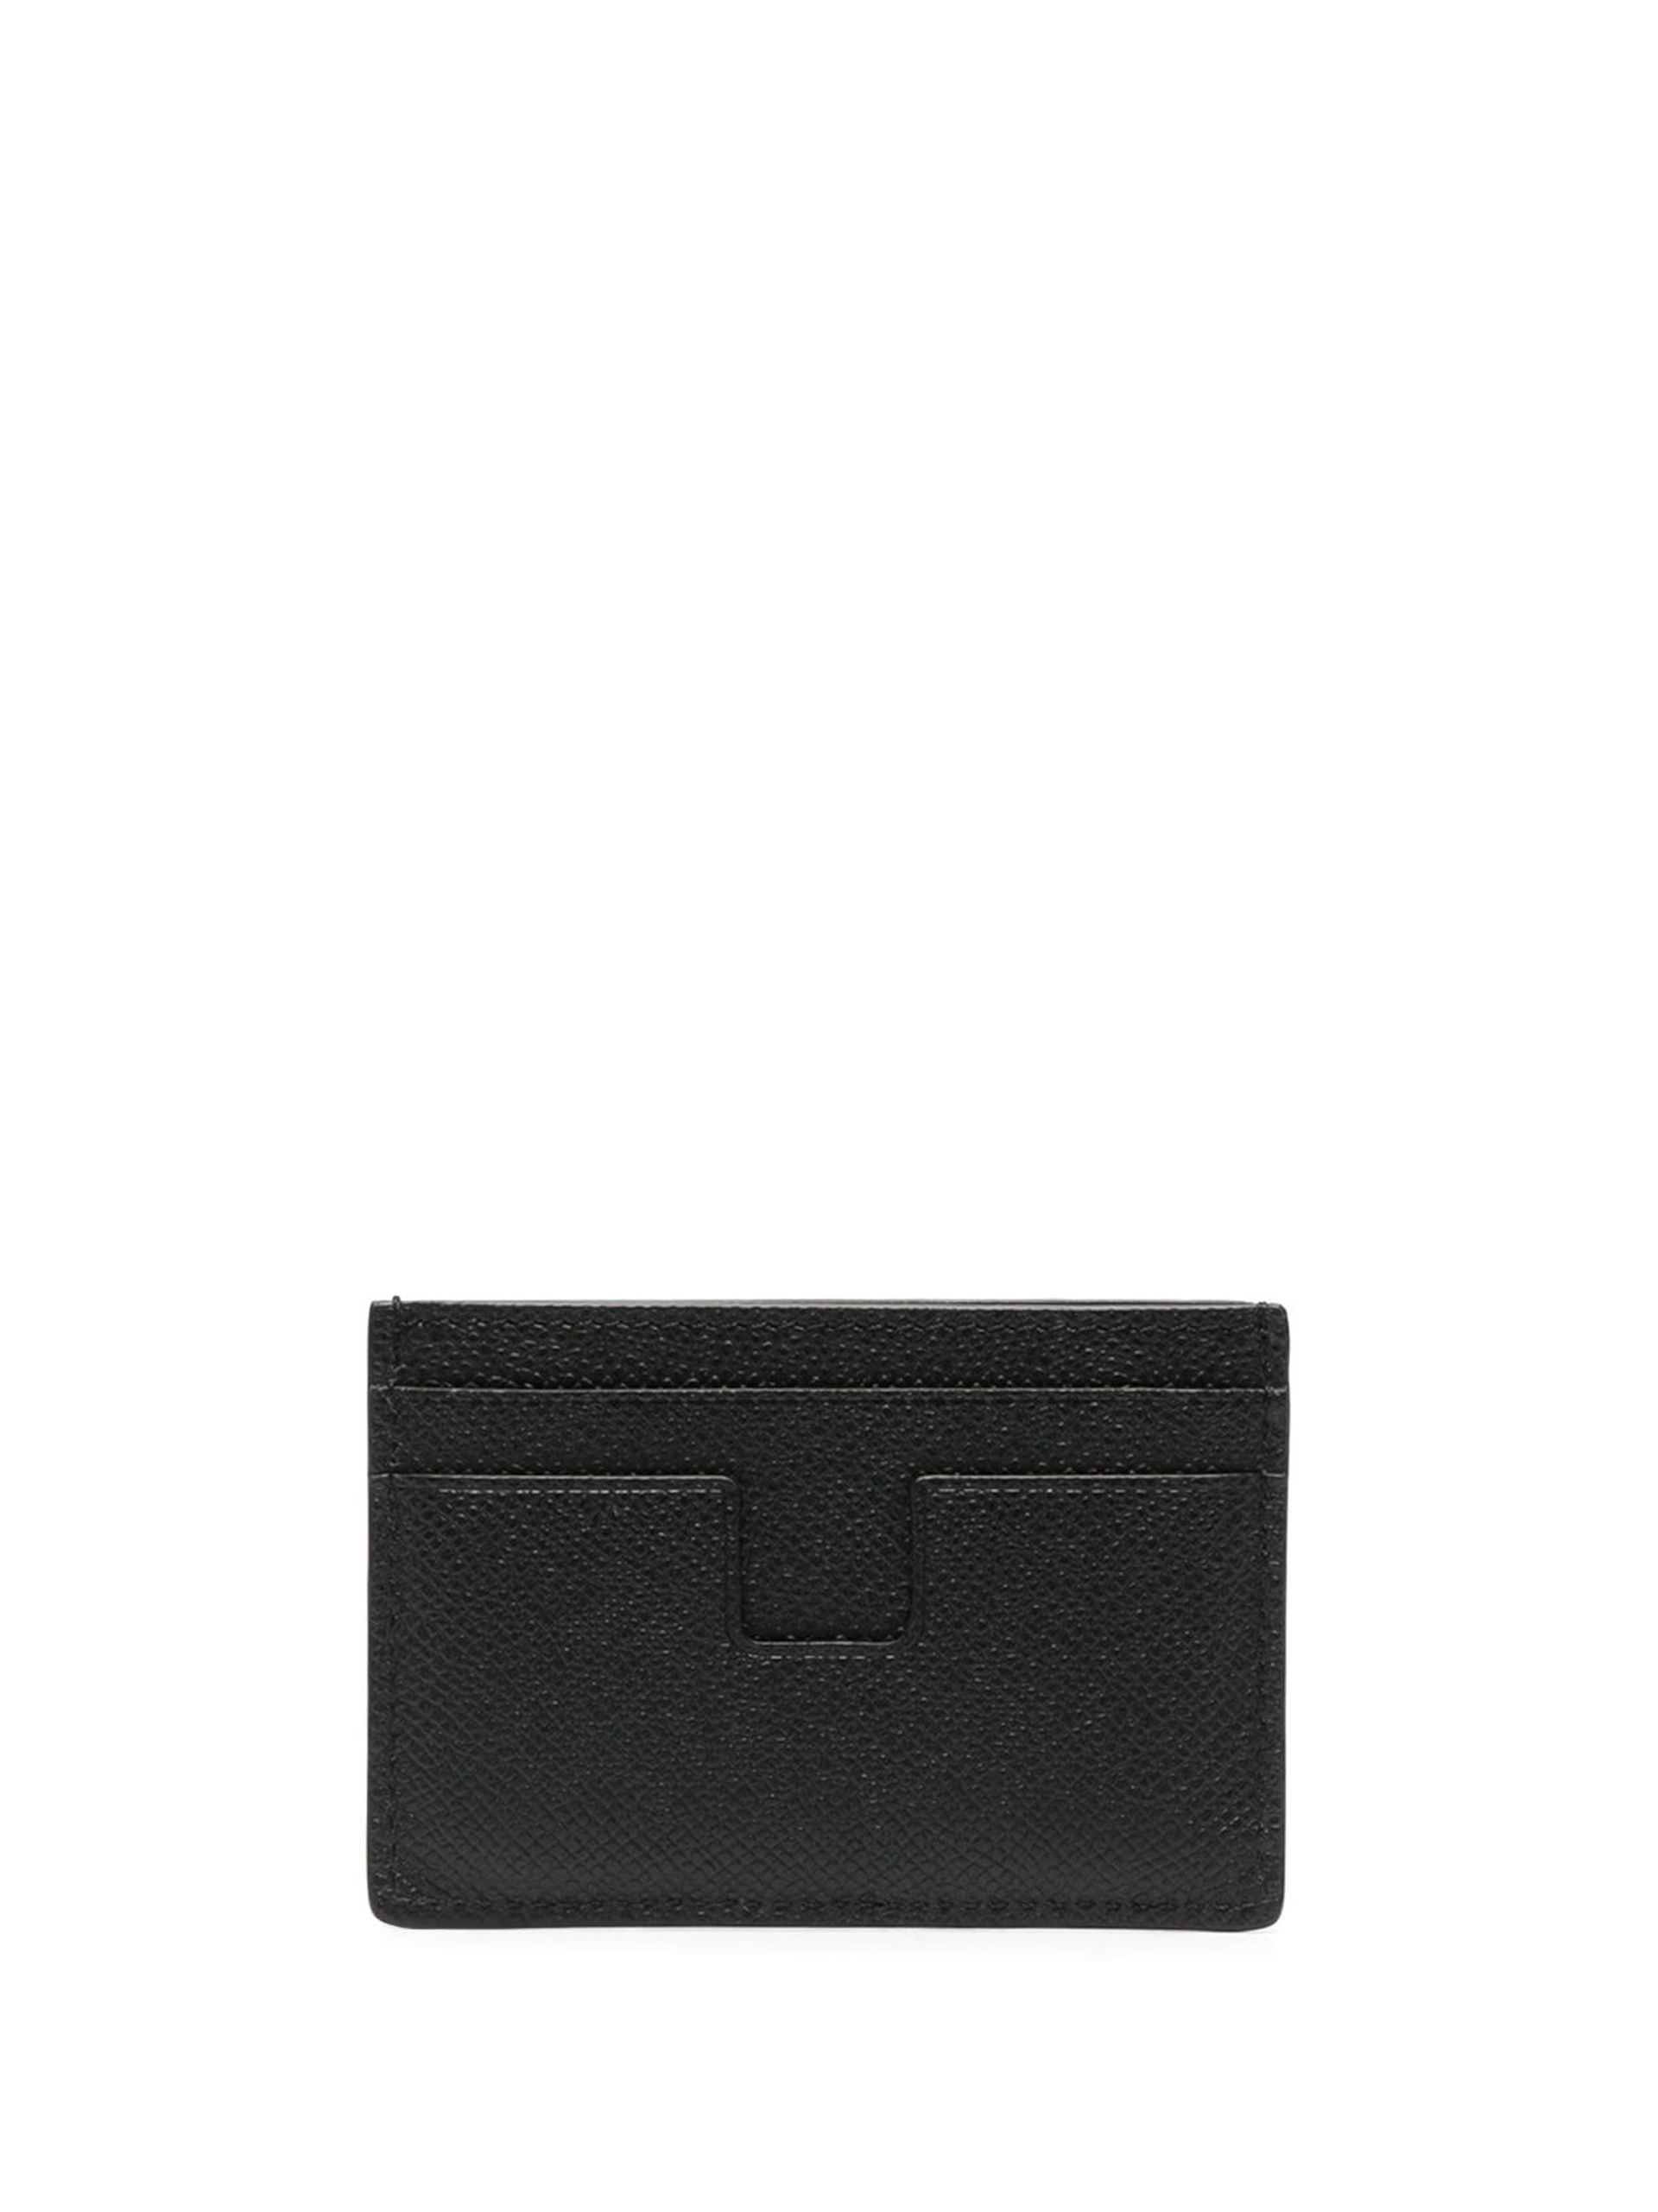 Black TF Leather Cardholder - 2